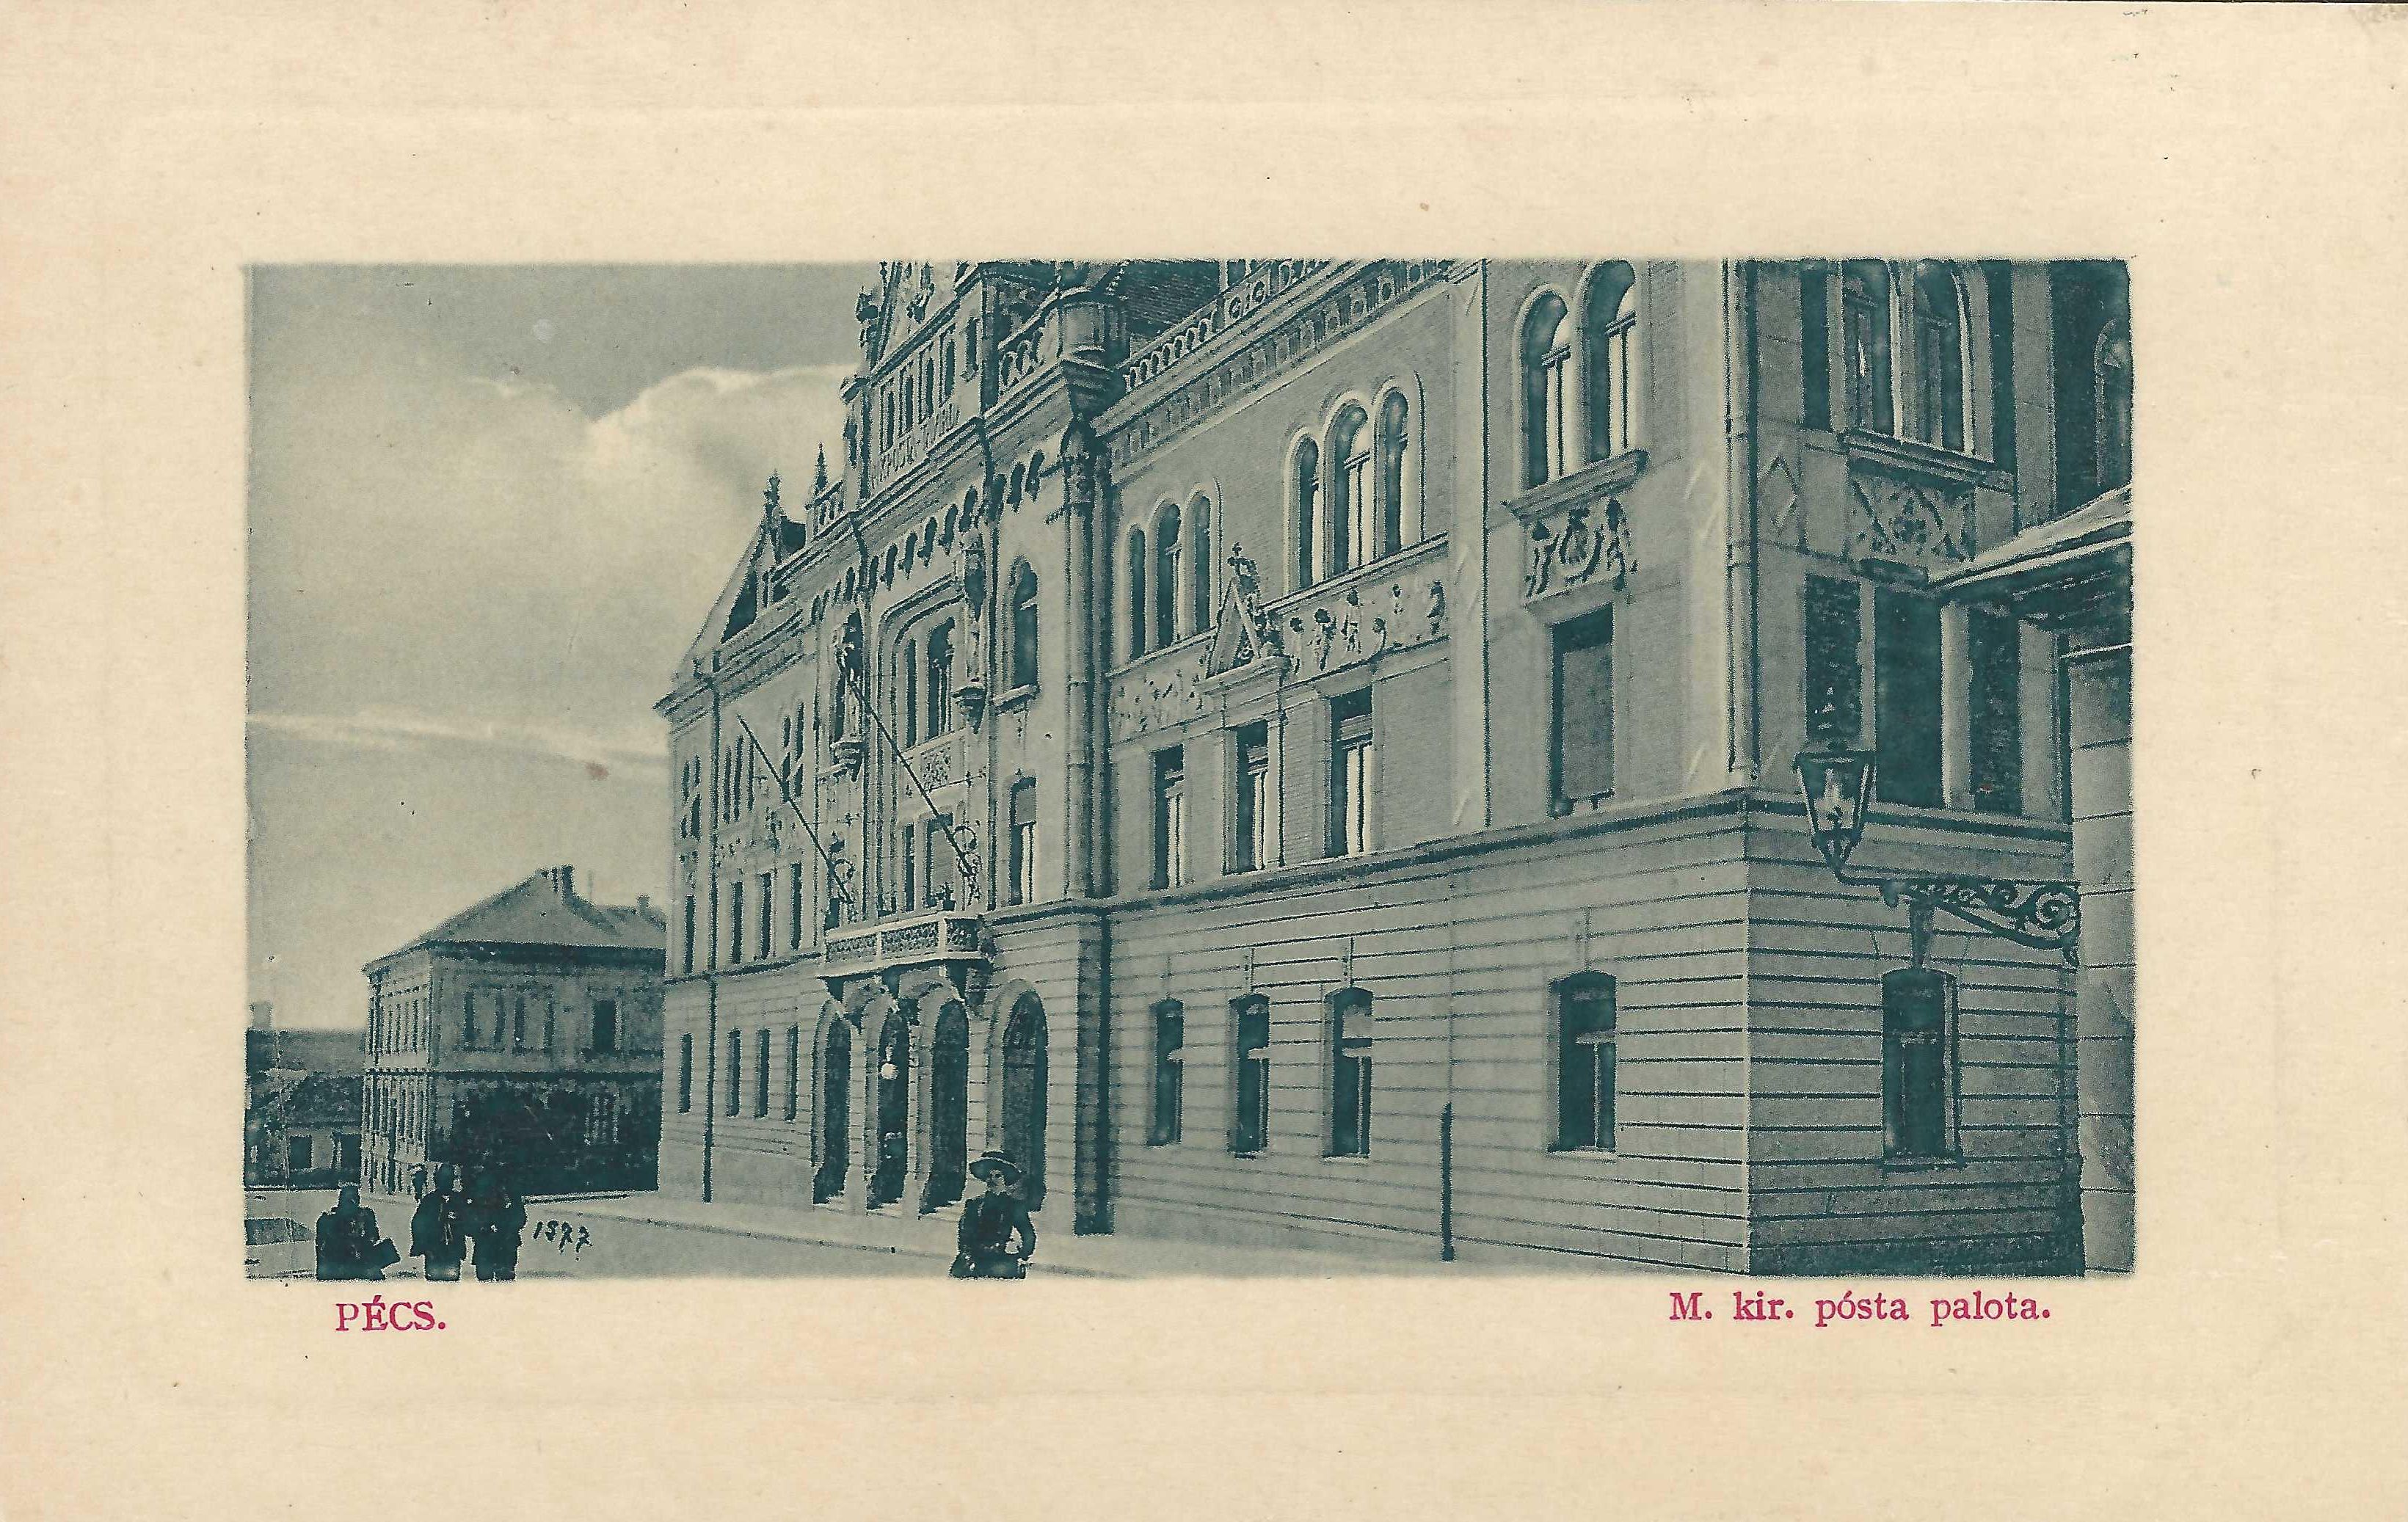 Pécs Levelezőlap a Postapalotáról az 1920-es évekből